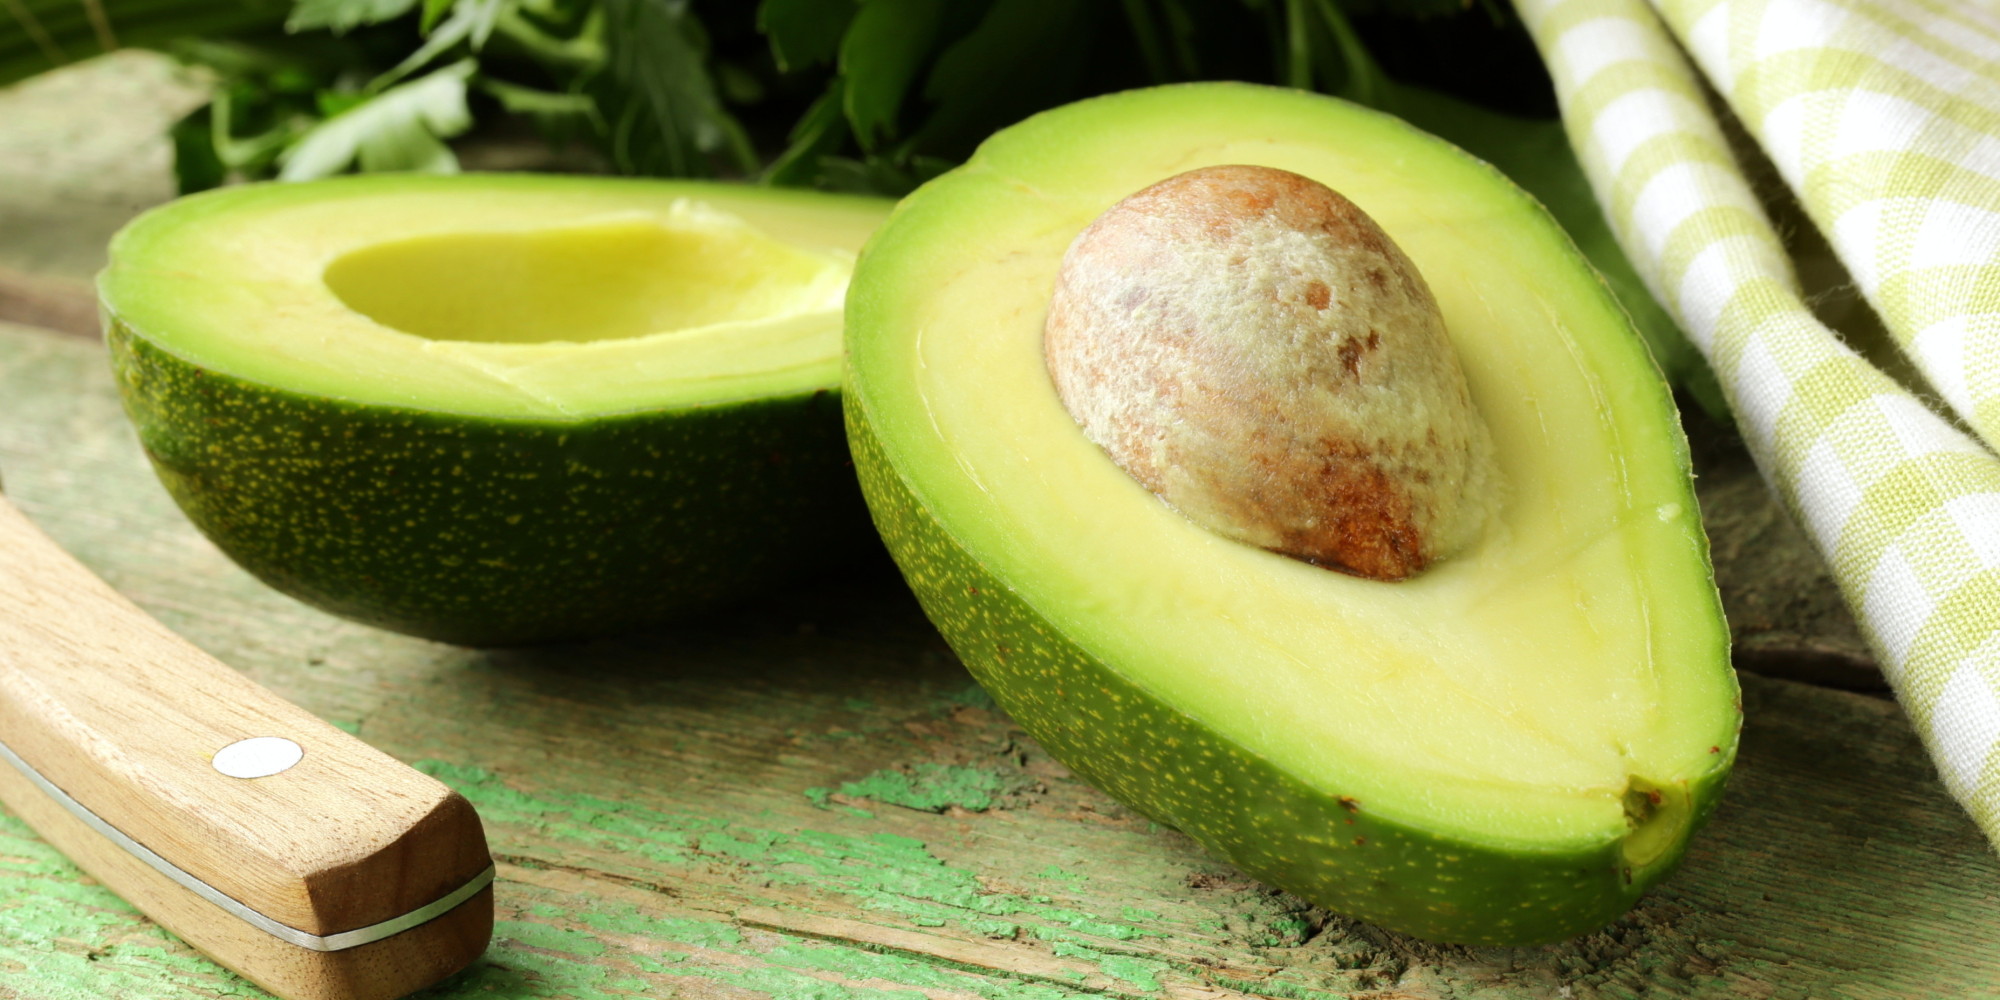 An avocado a day may help keep bad cholesterol at bay